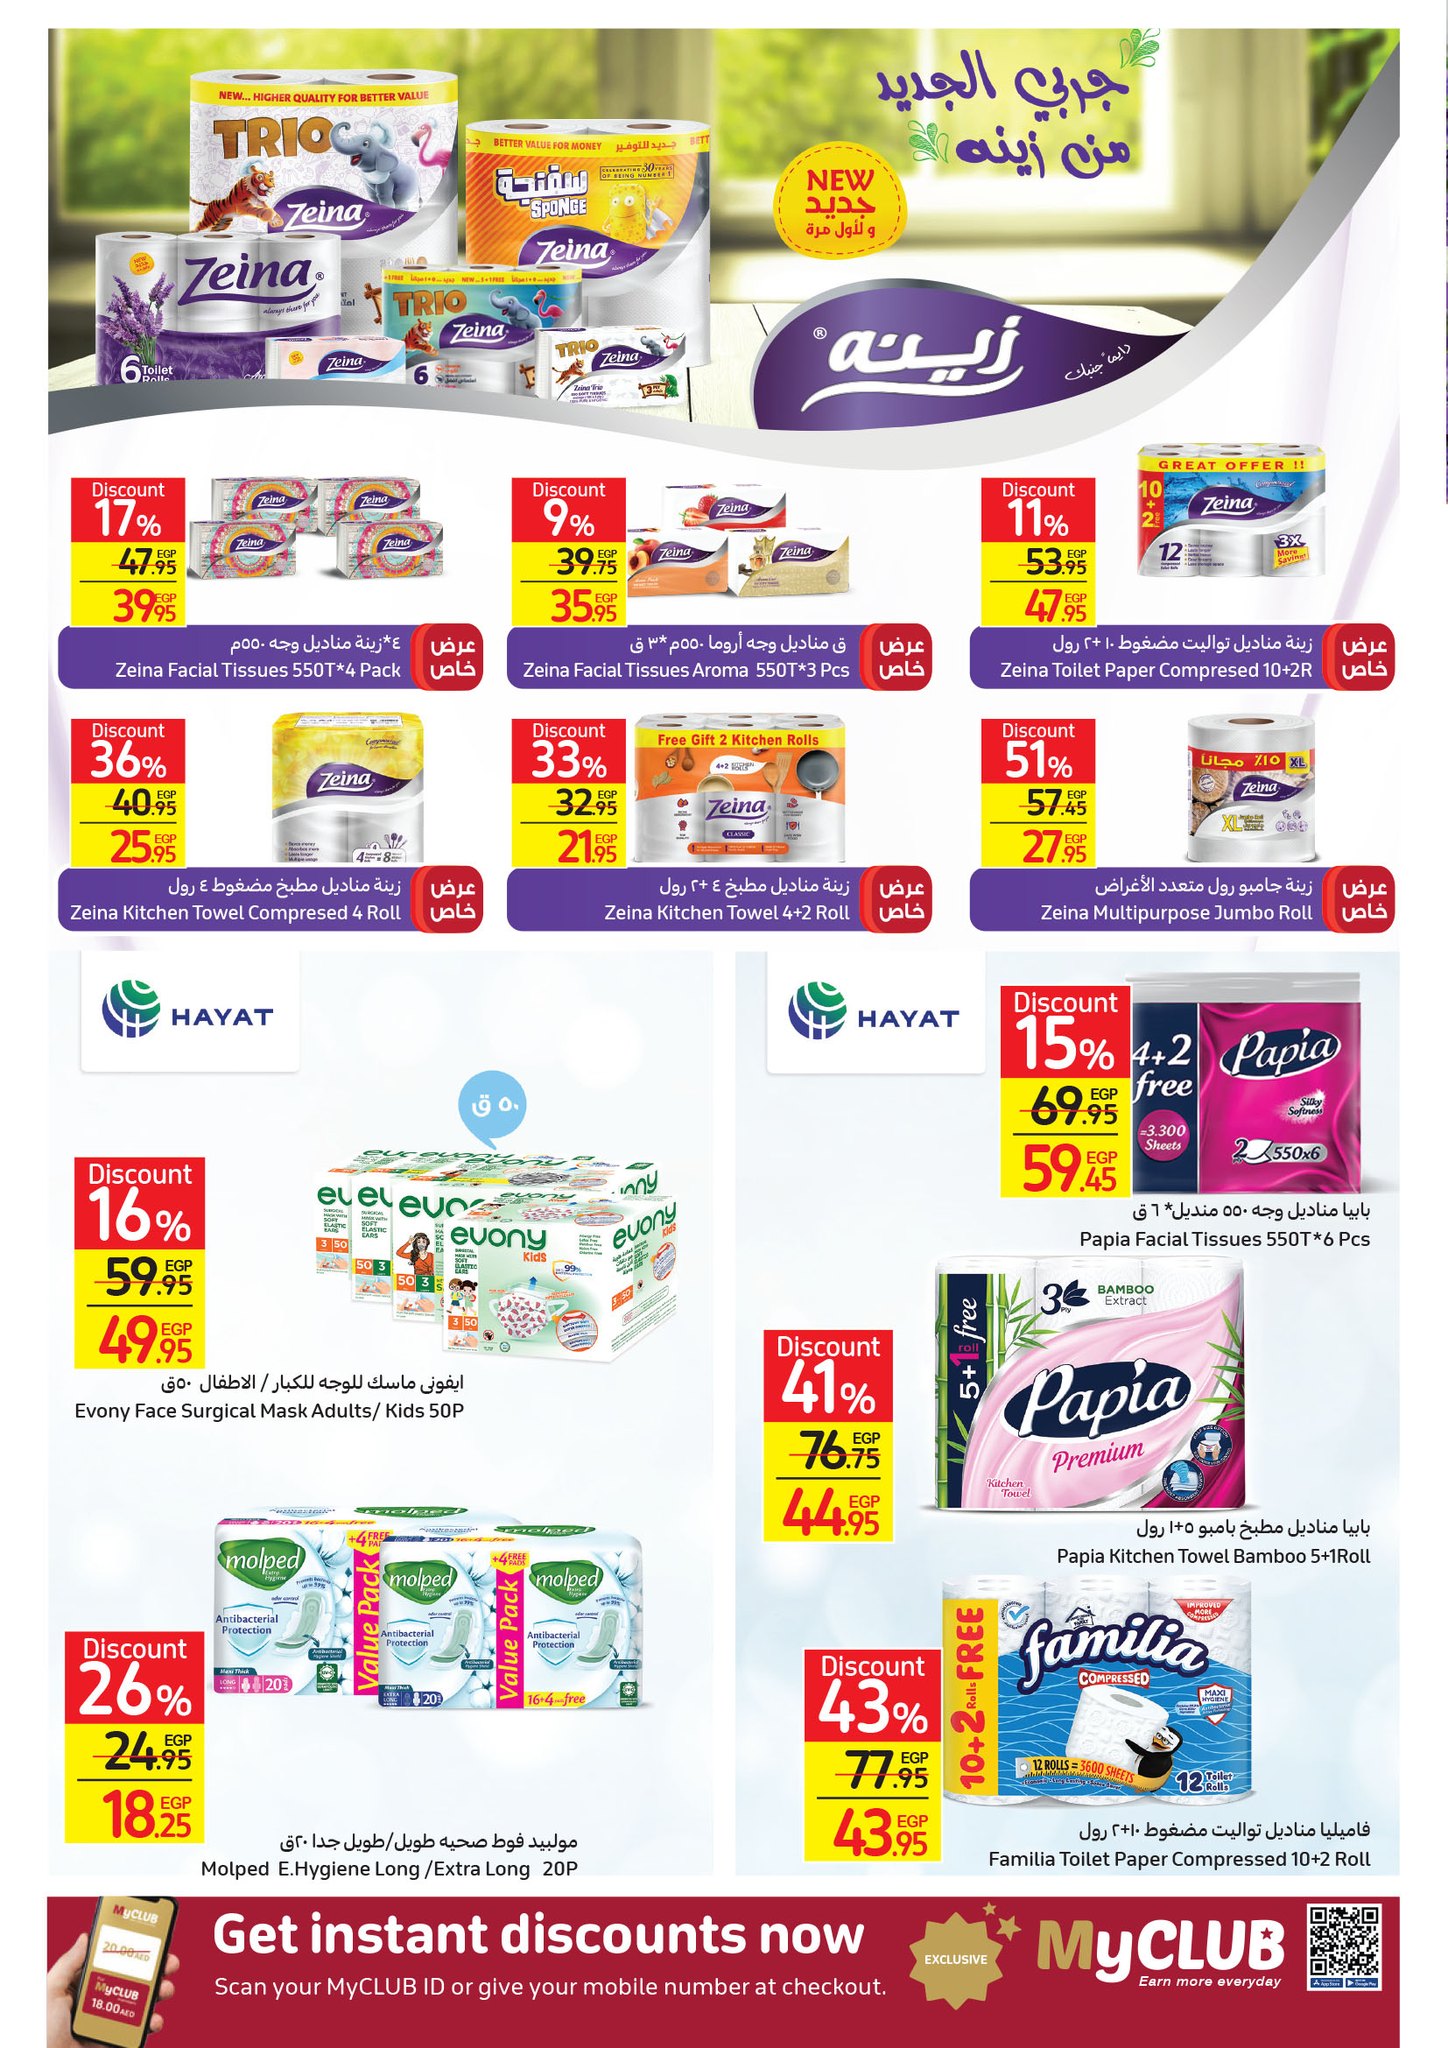 Carrefour Egypt أحدث عروض كارفور للجمعة البيضاء شهر نوفمبر بخصومات تصل 50% 47